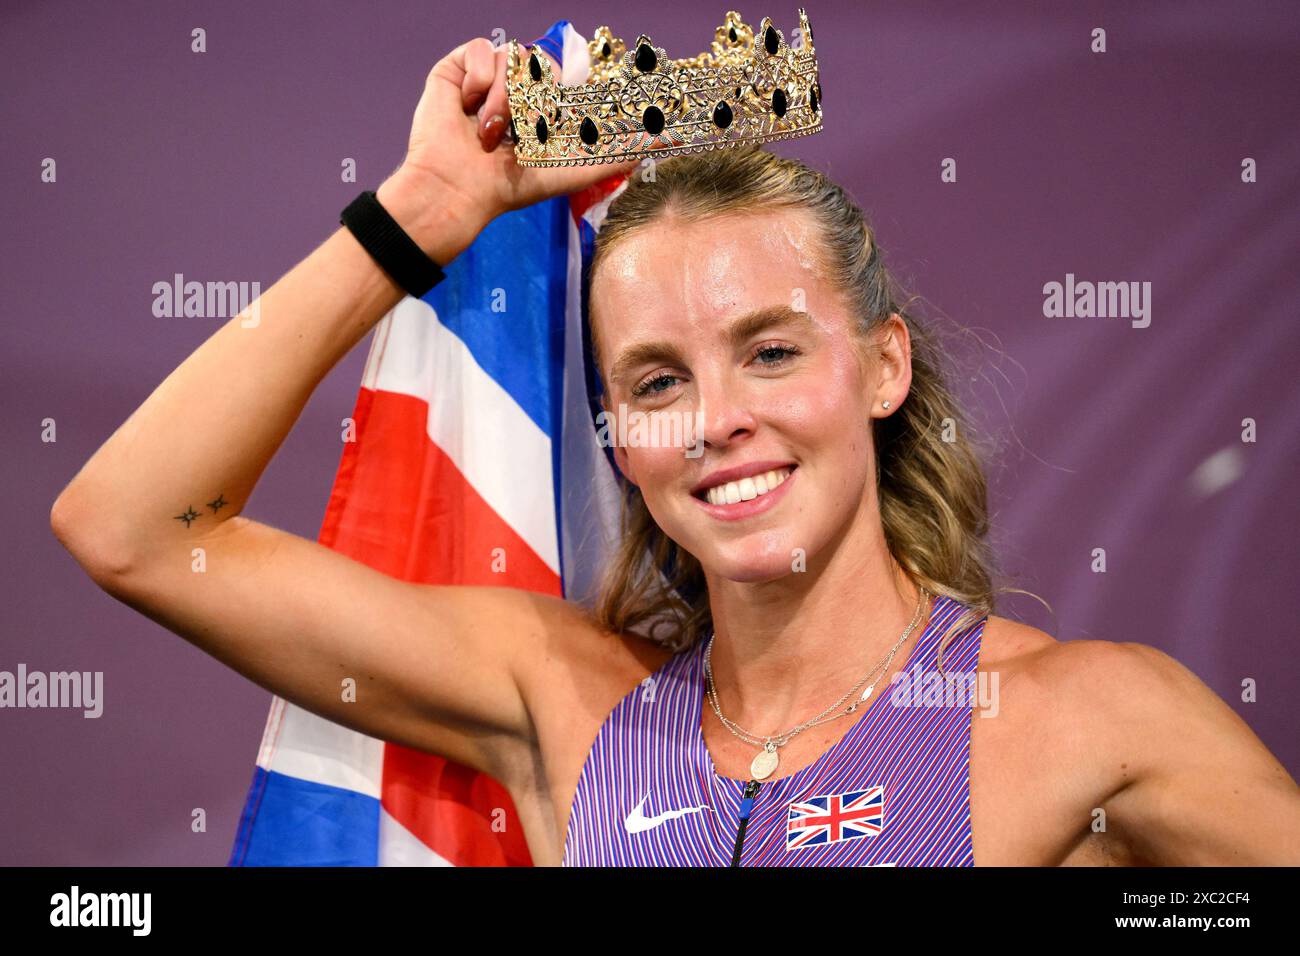 Keely Hodgkinson, de Grande-Bretagne, porte une couronne alors qu'elle célèbre sa participation au 800 m féminin des Championnats d'Europe d'athlétisme au stade Olimpico à Rome (Italie), le 12 juin 2024. Keely Hodgkinson s'est classé premier en remportant la médaille d'or. Banque D'Images